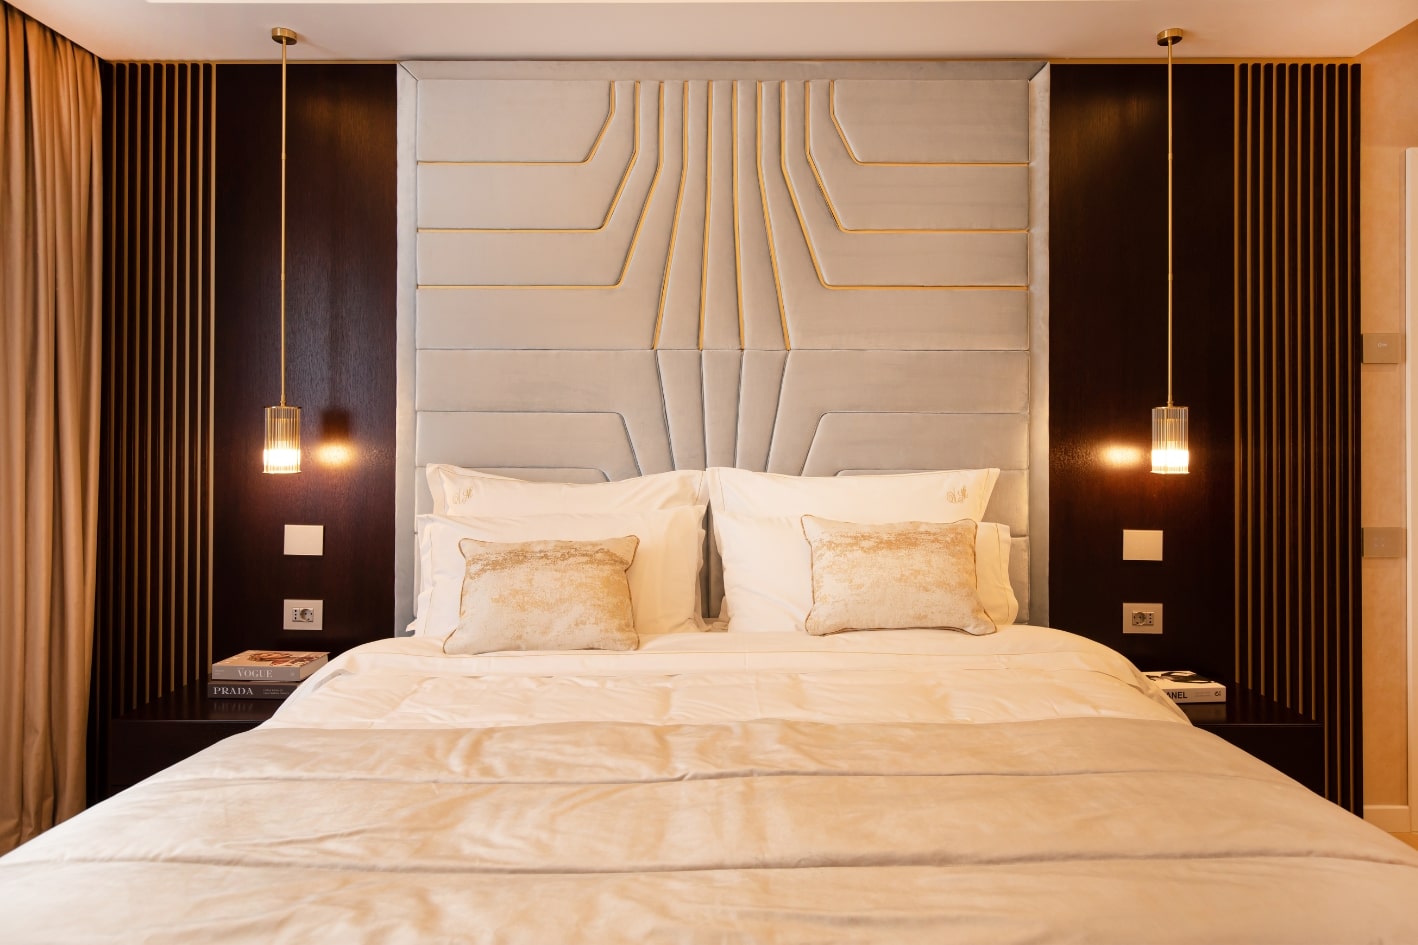 Dormitor matrimonial cu un perete de accent gri si un pat mare si confortabil.